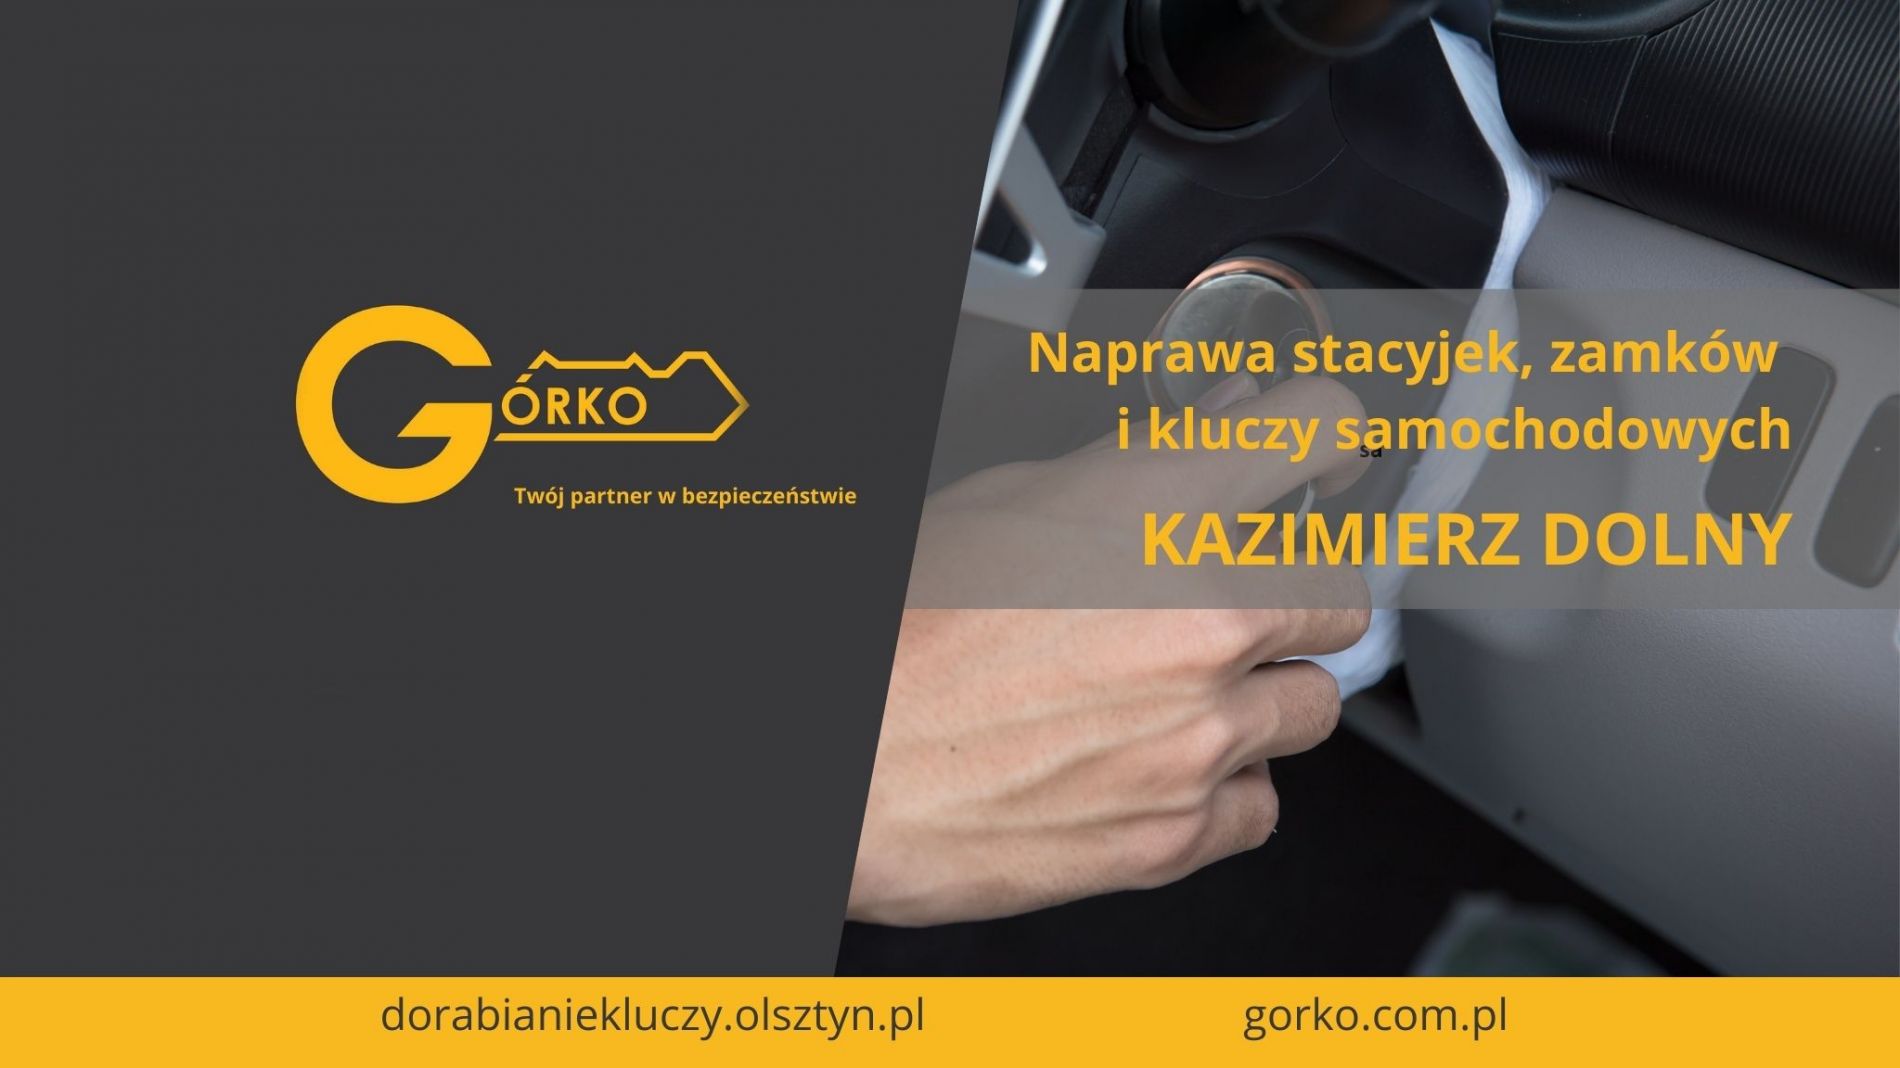 Naprawa stacyjek, zamków i kluczy samochodowych – Kazimierz Dolny (Usługa zdalna)